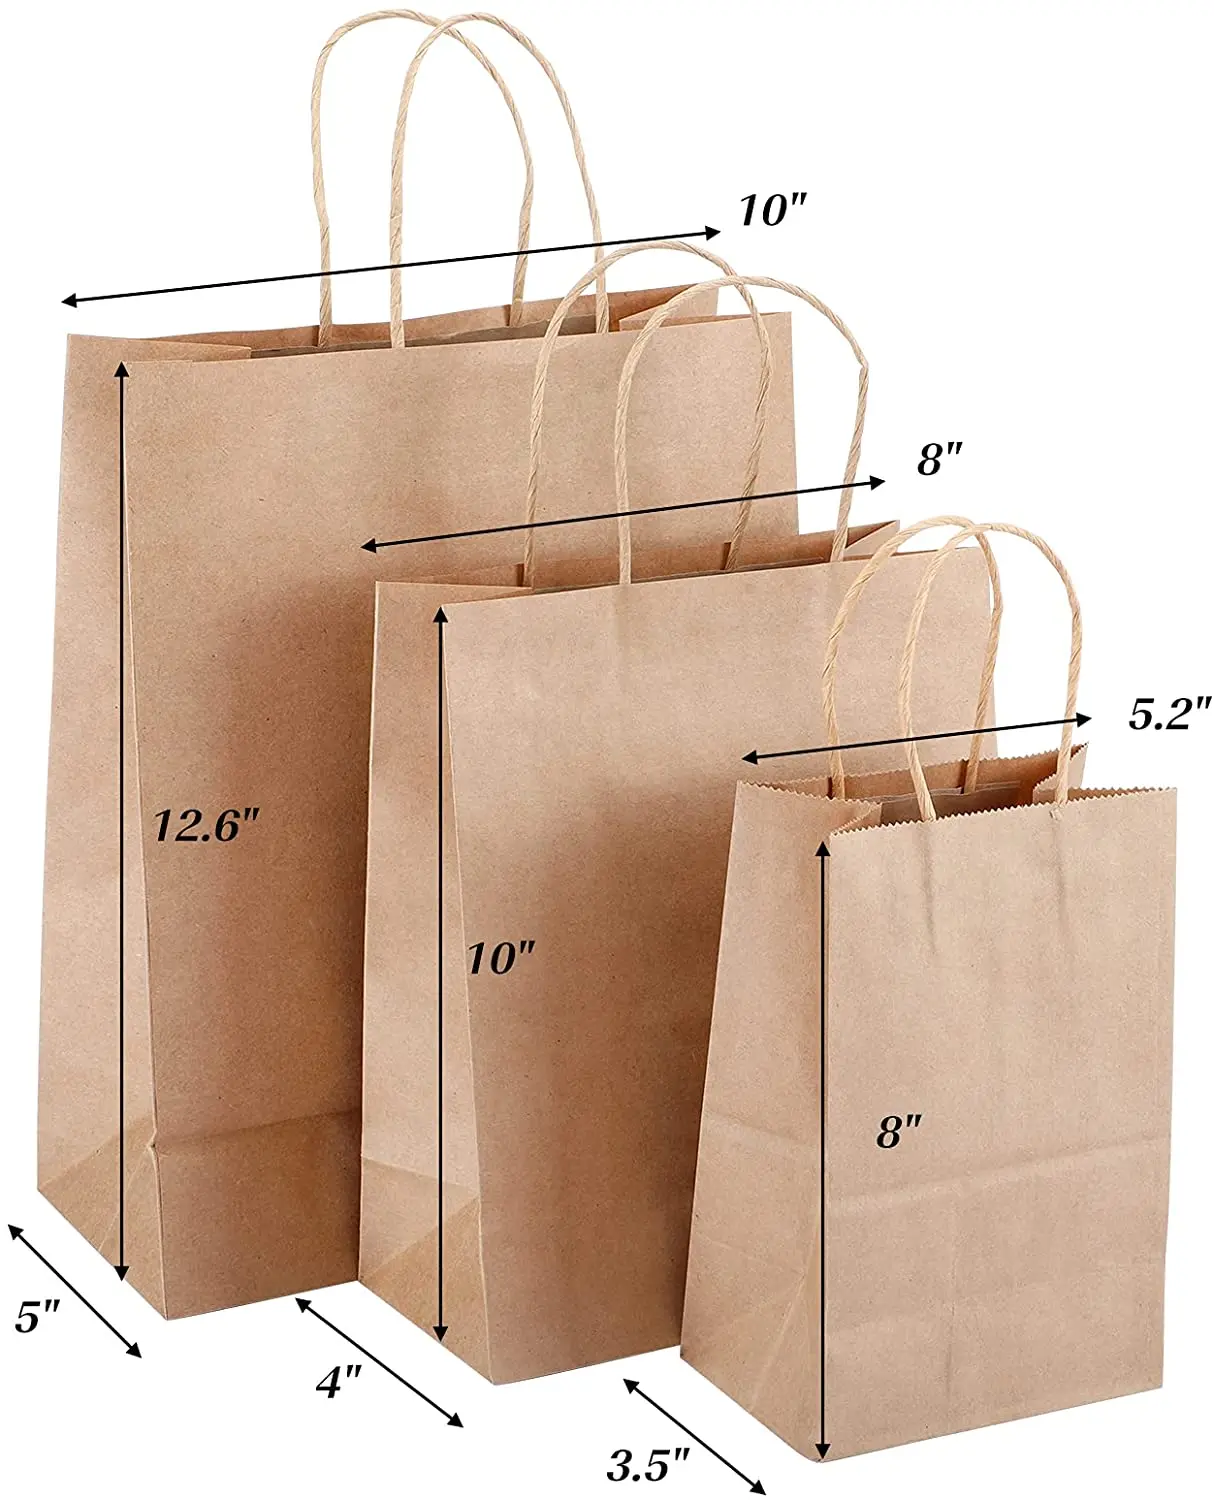 Kraft Paper Bags - Design and Print Kraft Paper Bags